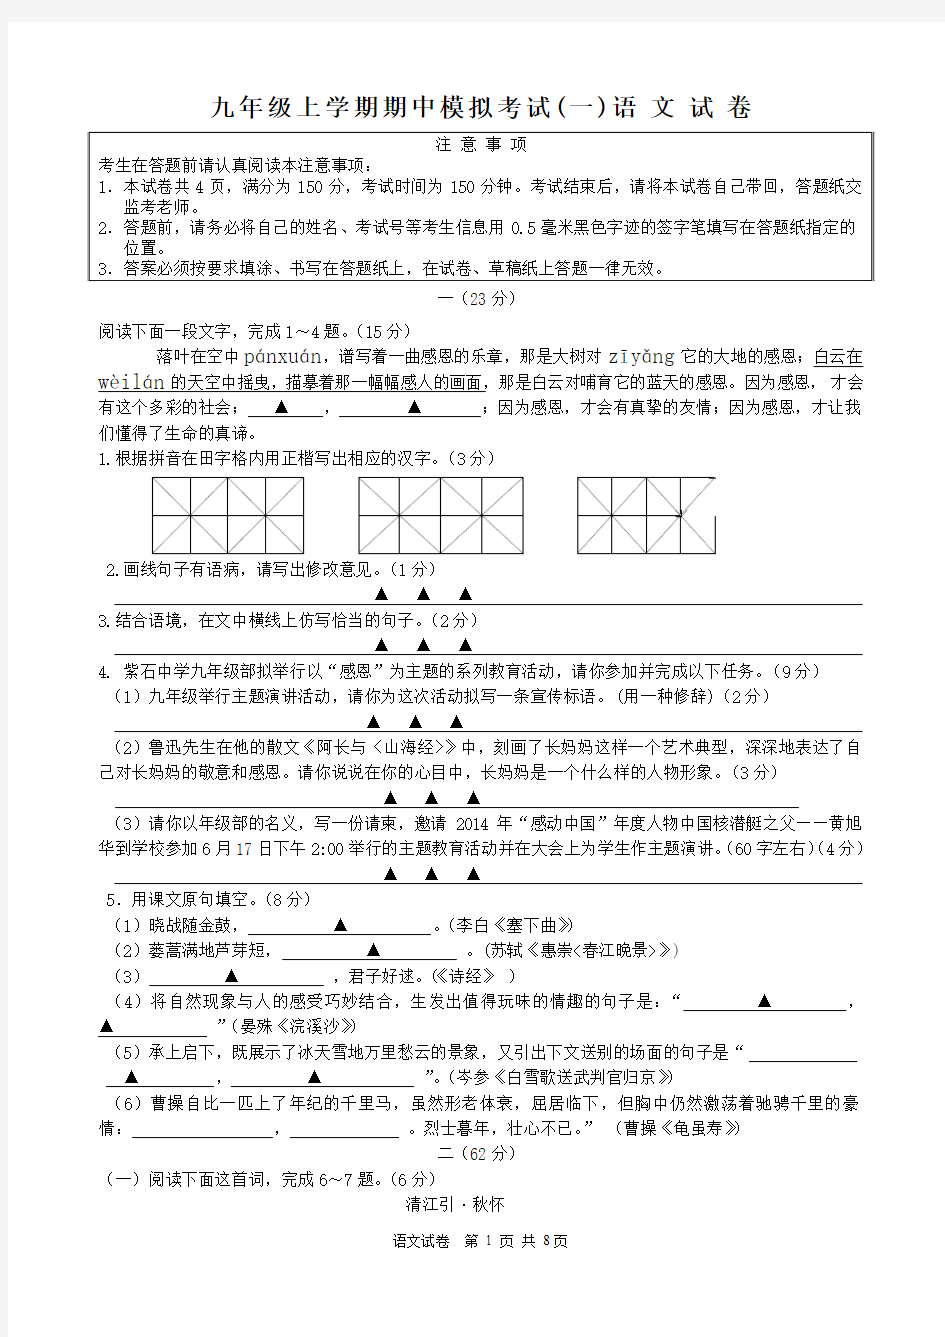 九年级上学期期中考试语文试卷及答题纸 (1)